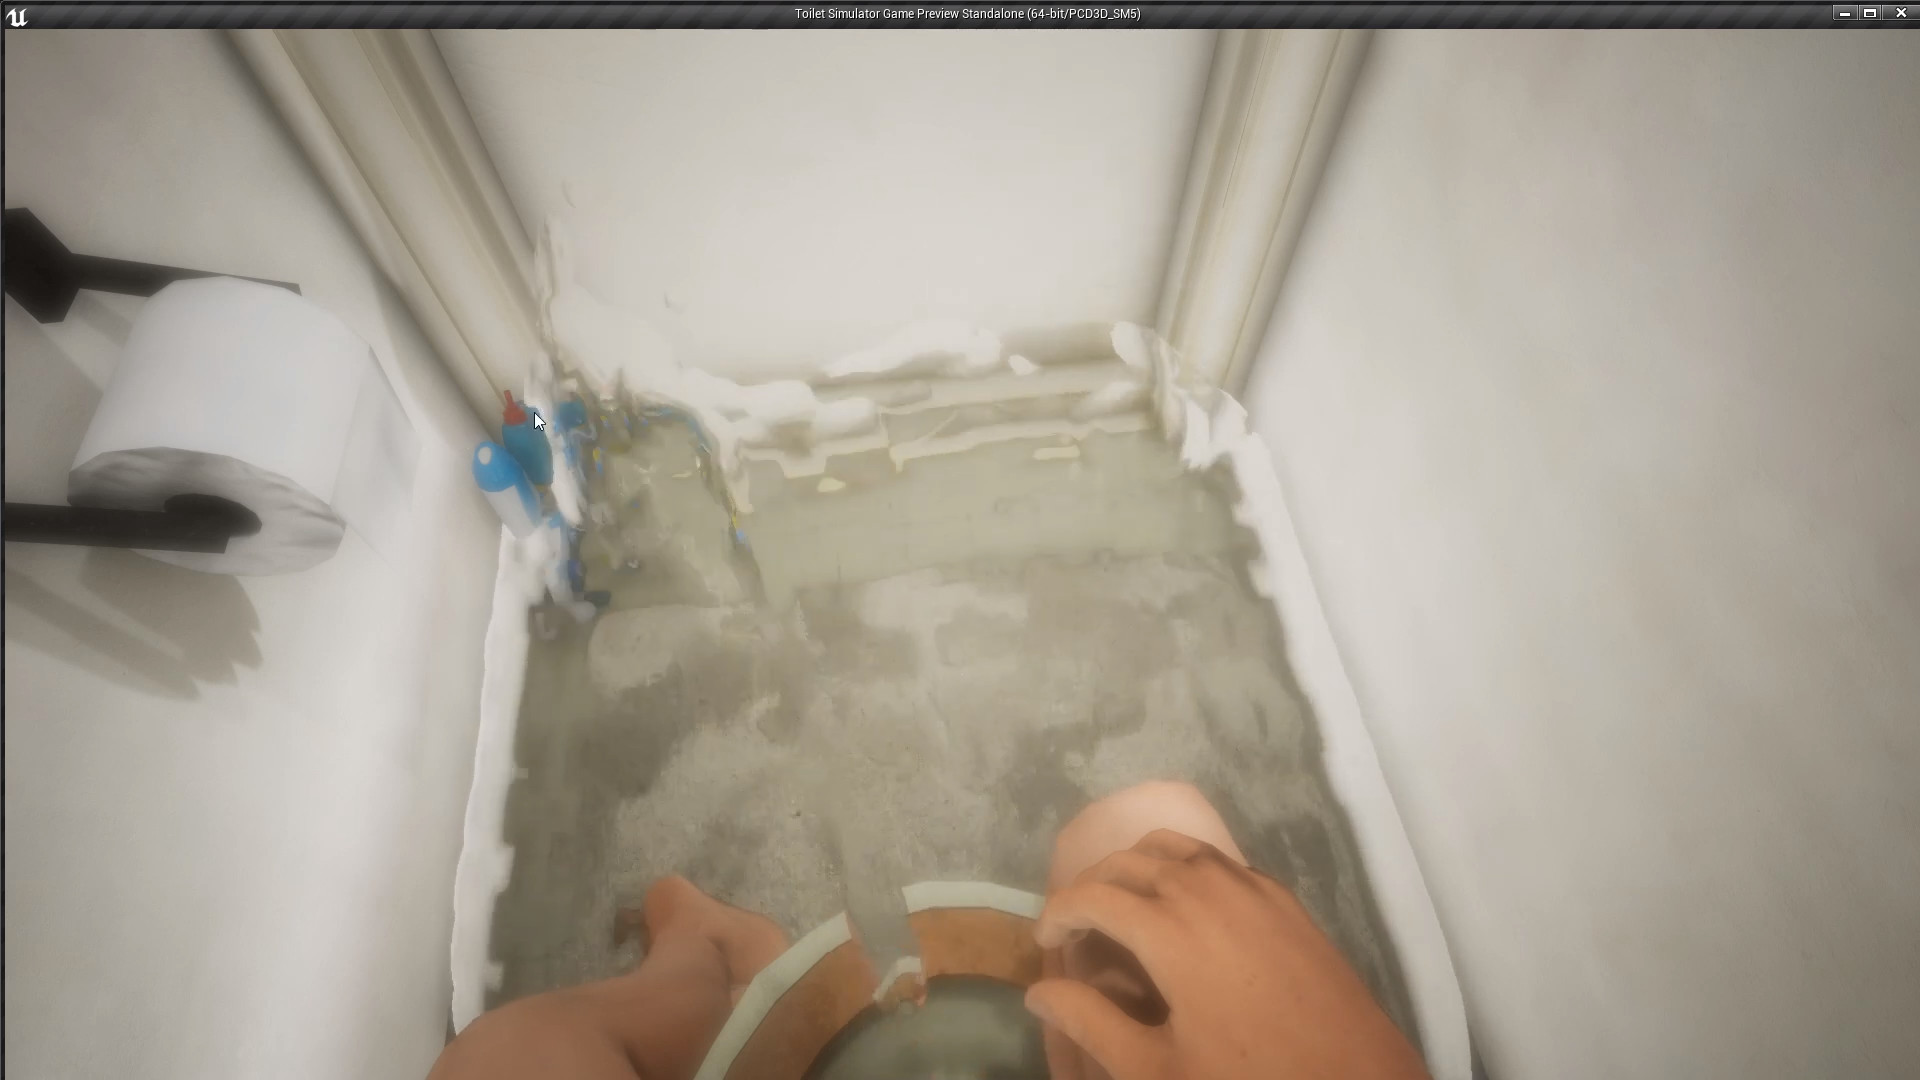 Toilet Simulator screenshot